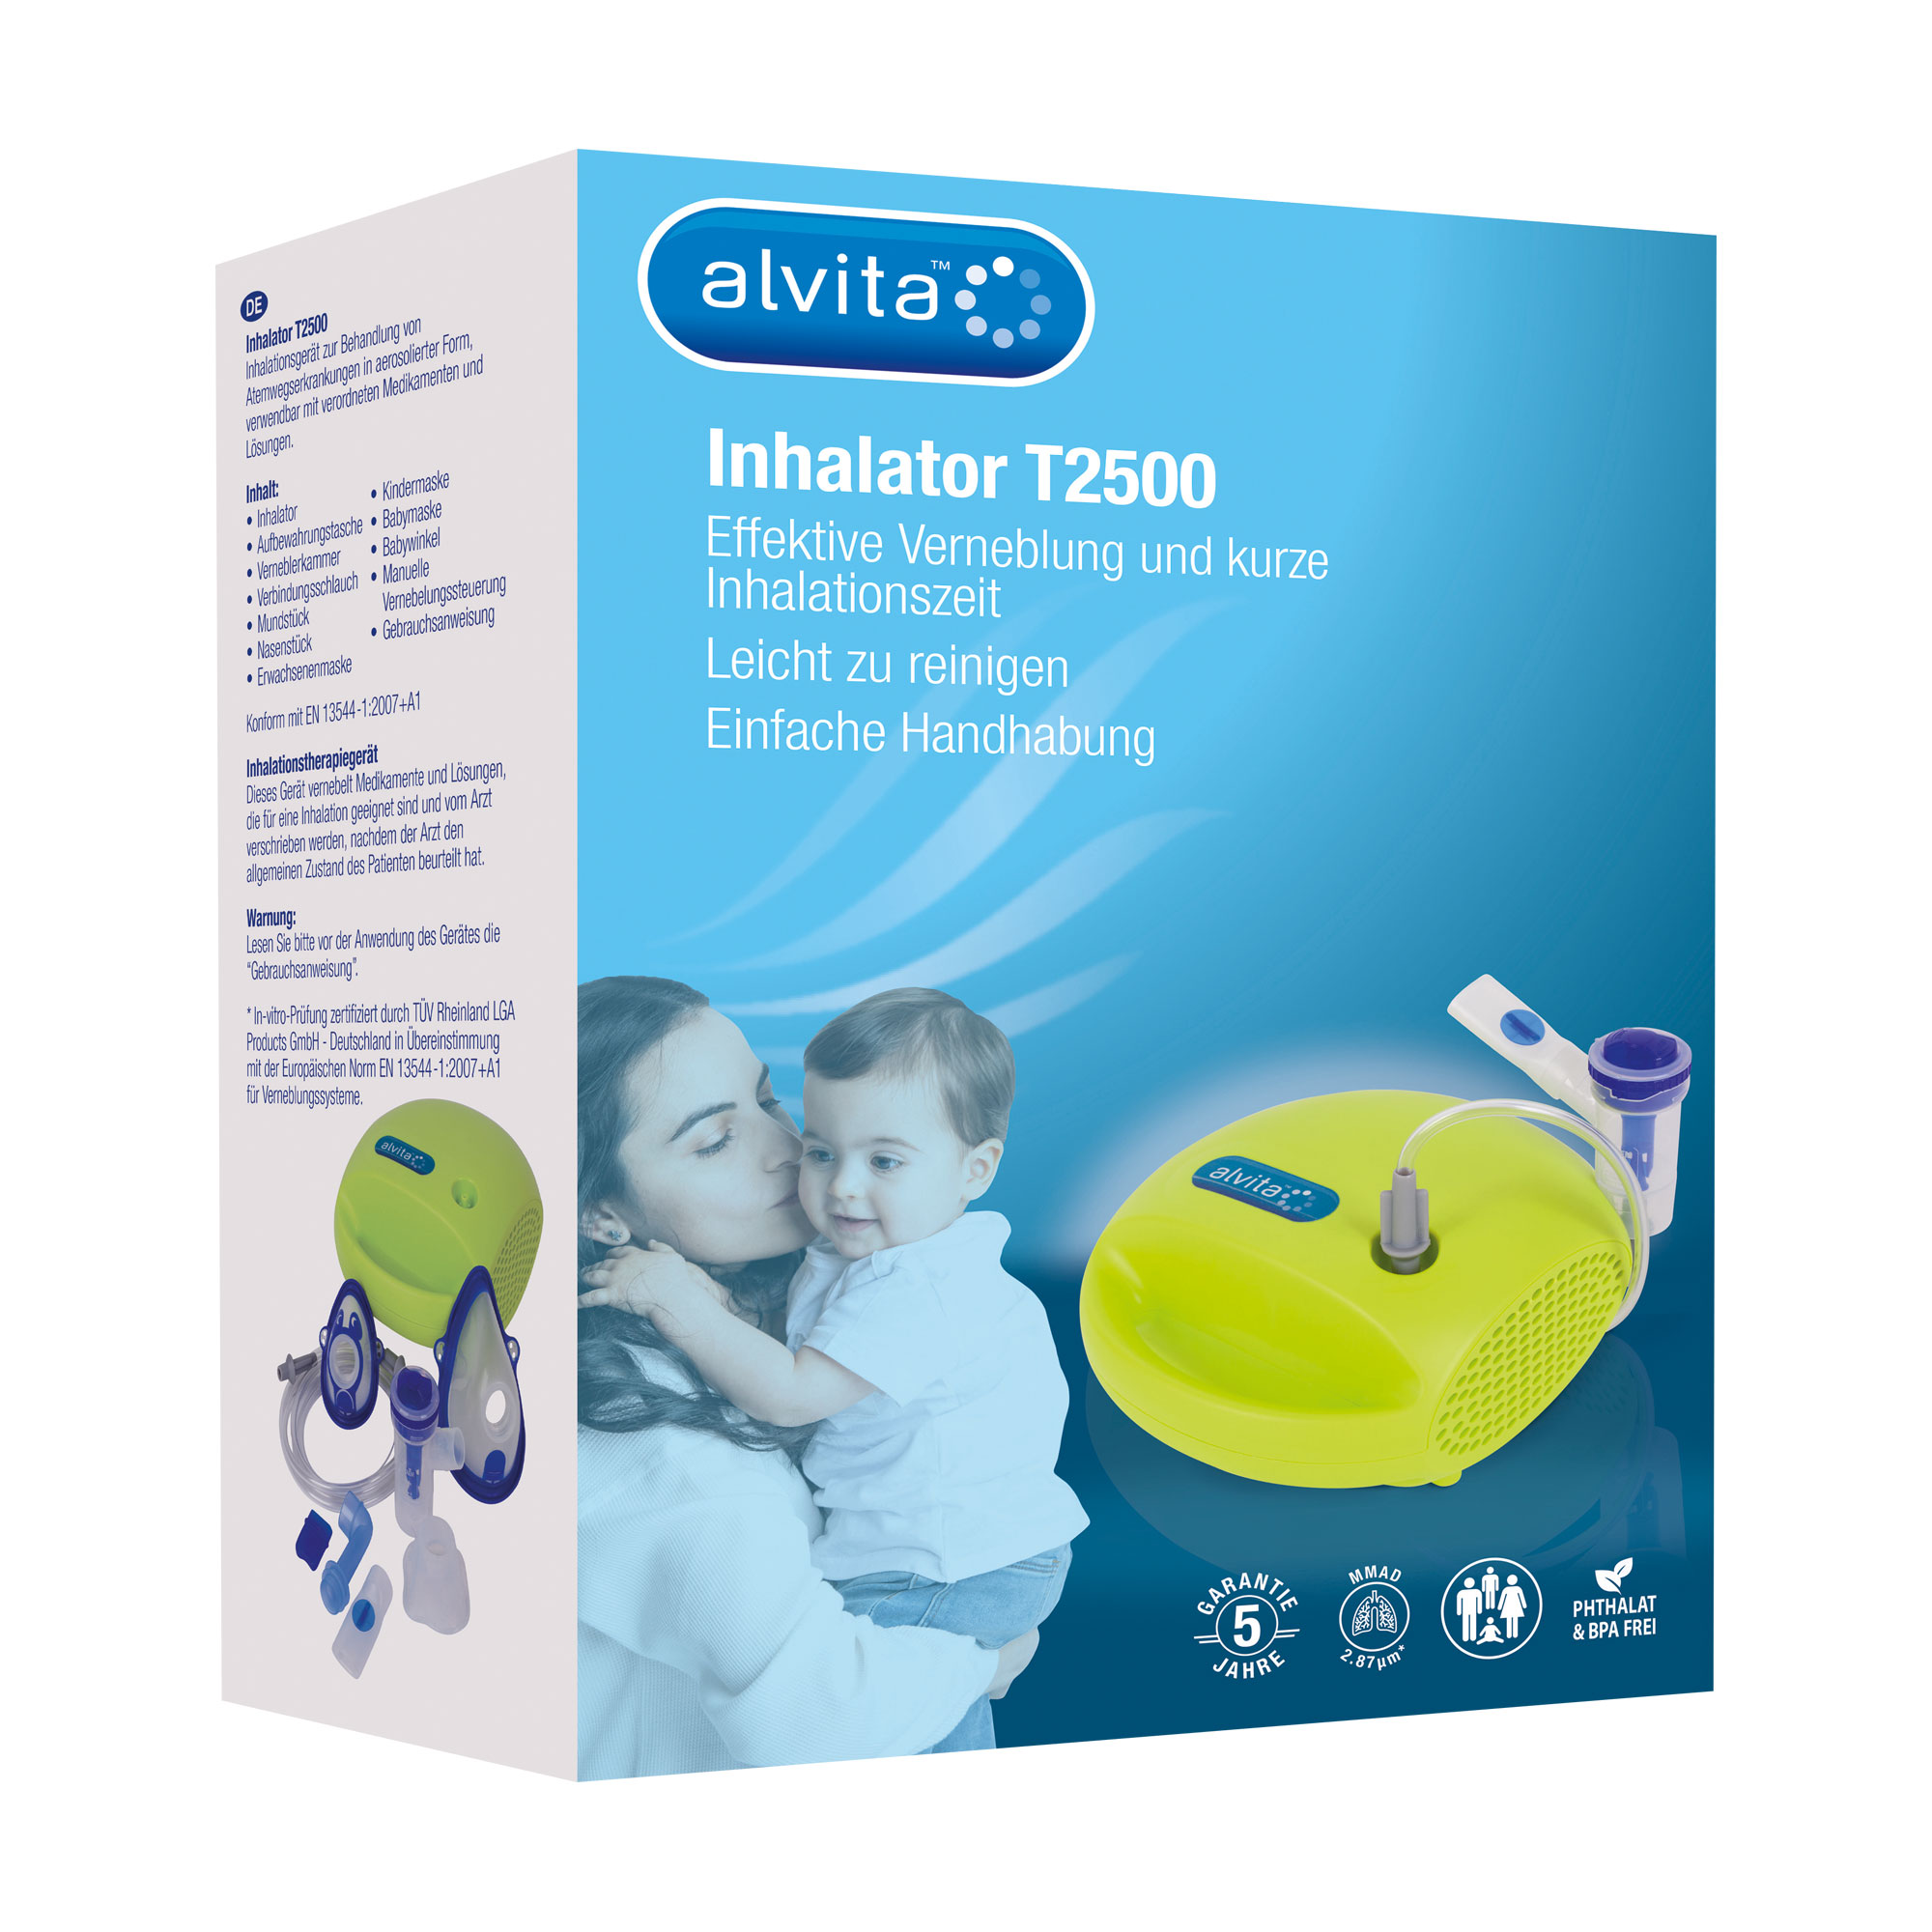 Schnelles, leieses und effektives Vernebler-System für die Verabreichung von Medikamenten. Zur Anwendung bei Kleinkindern.